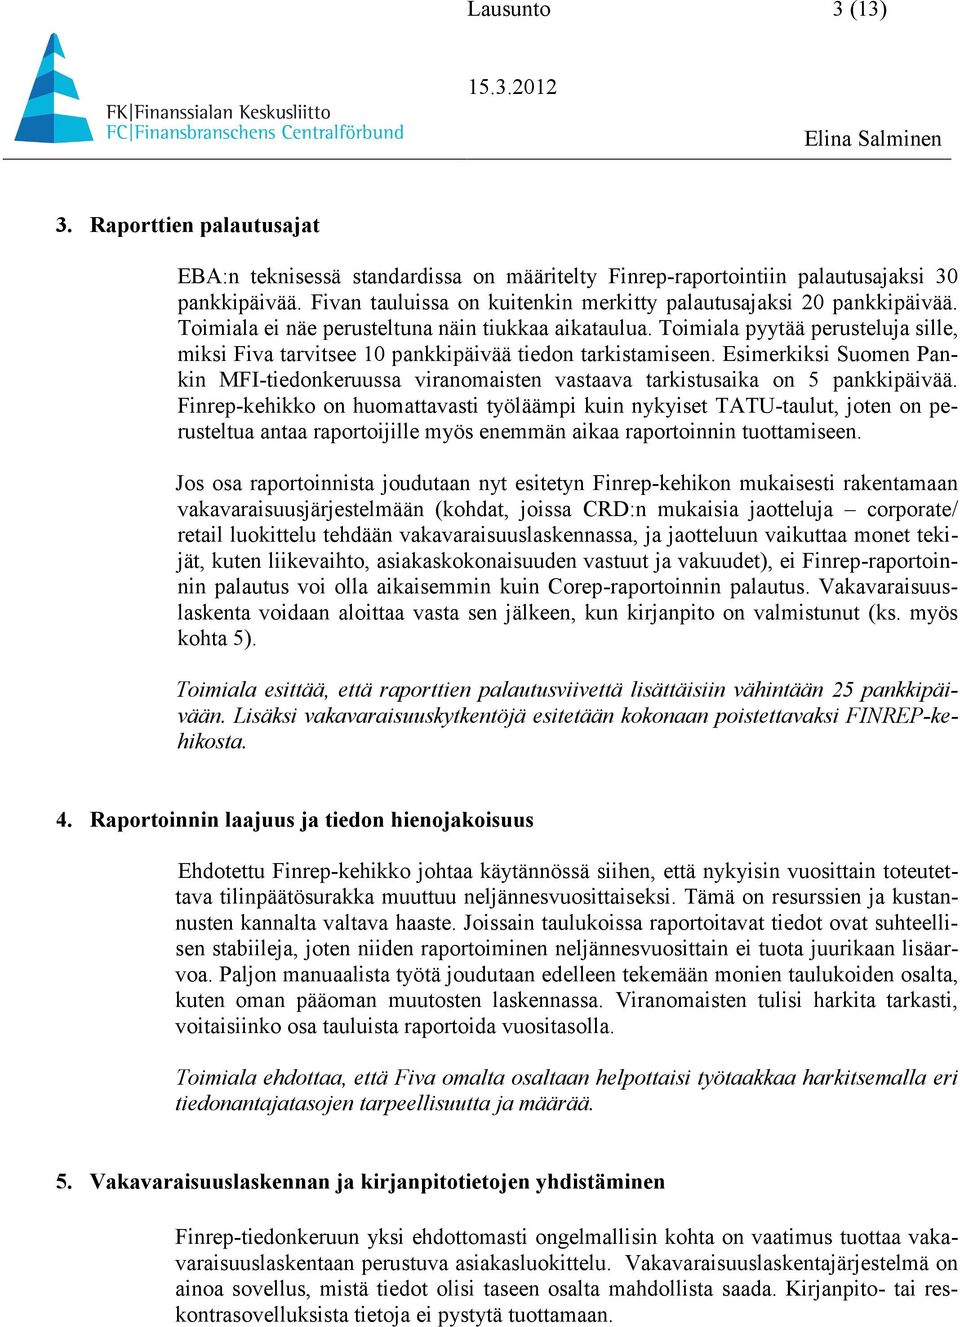 Toimiala pyytää perusteluja sille, miksi Fiva tarvitsee 10 pankkipäivää tiedon tarkistamiseen. Esimerkiksi Suomen Pankin MFI-tiedonkeruussa viranomaisten vastaava tarkistusaika on 5 pankkipäivää.